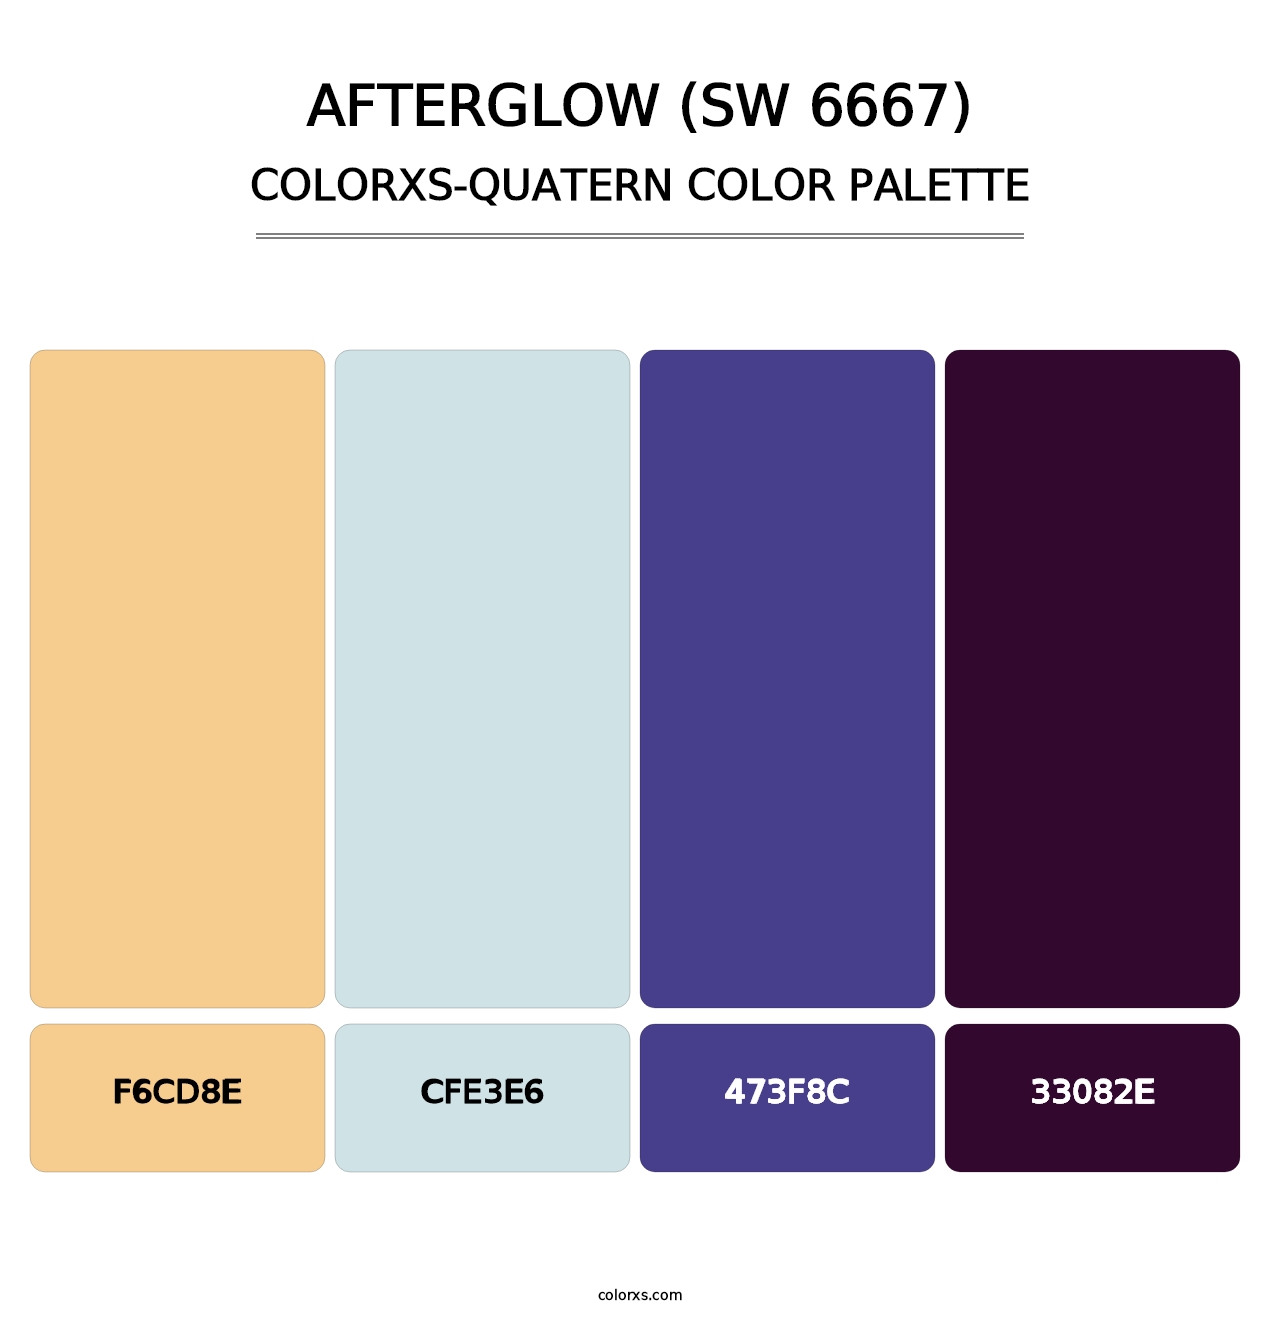 Afterglow (SW 6667) - Colorxs Quatern Palette